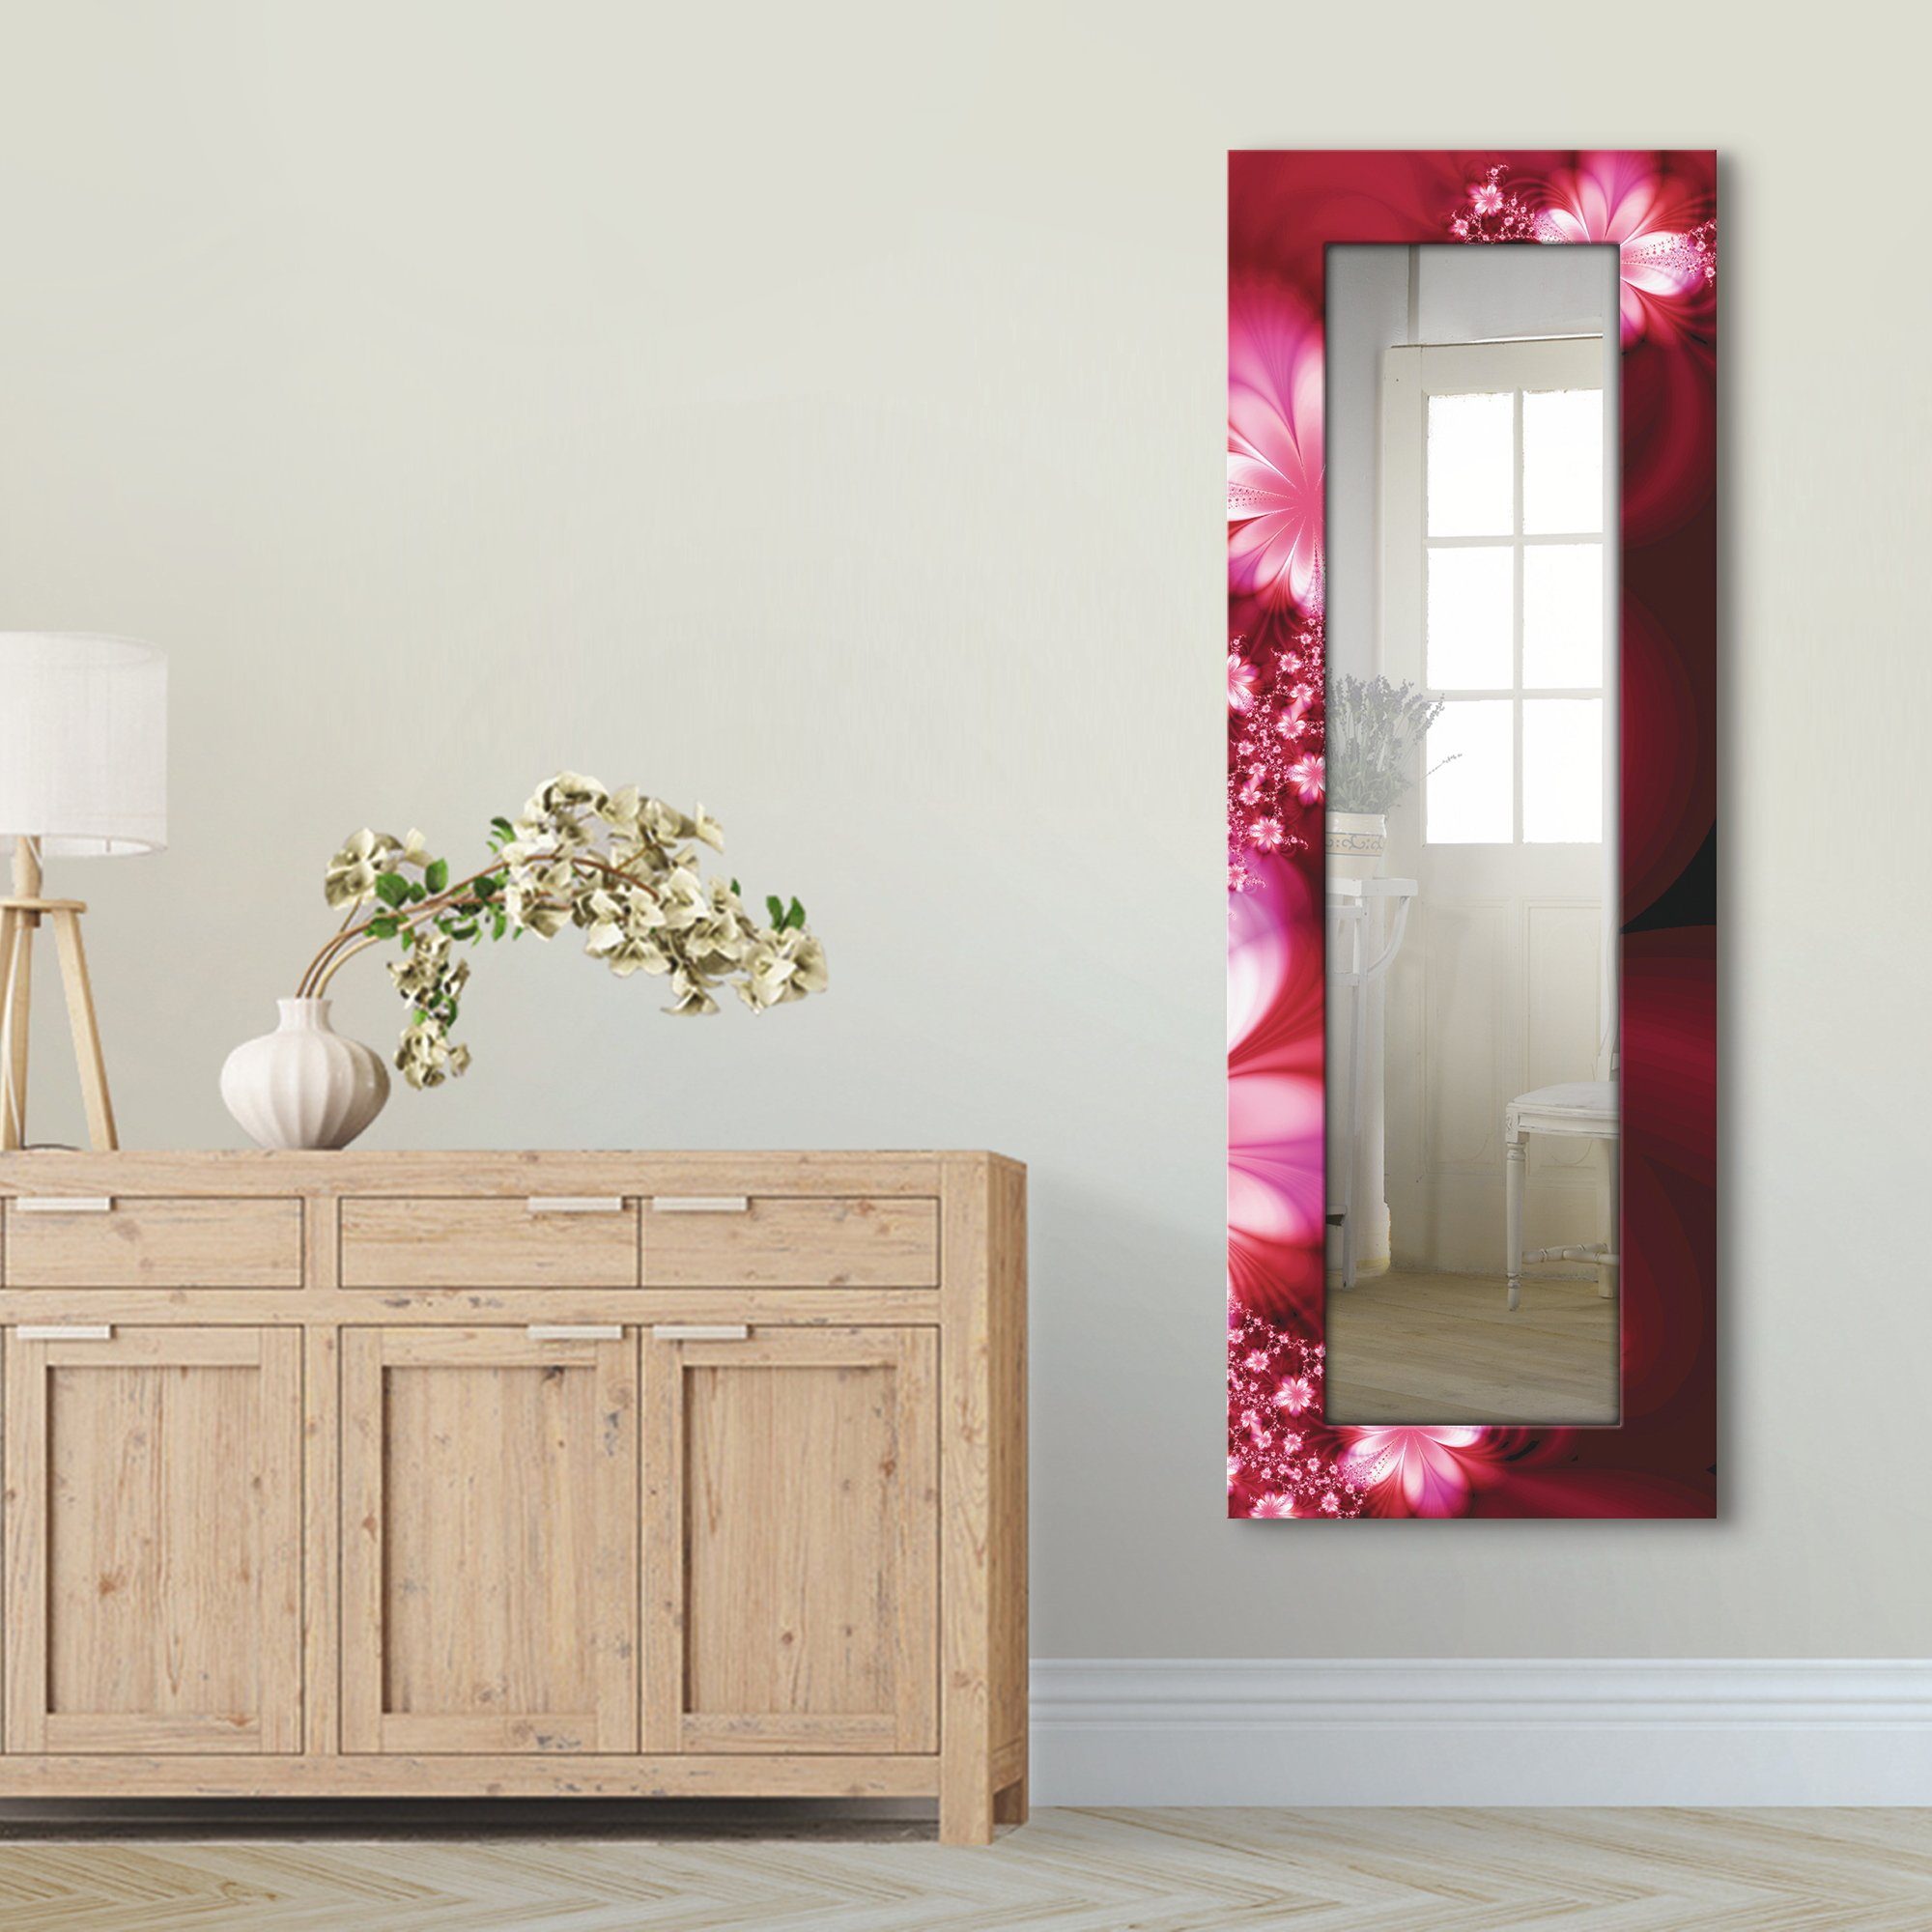 Motivrahmen, Landhaus mit Dekospiegel Wandspiegel, Girlande Artland Blumen, Ganzkörperspiegel, gerahmter aus